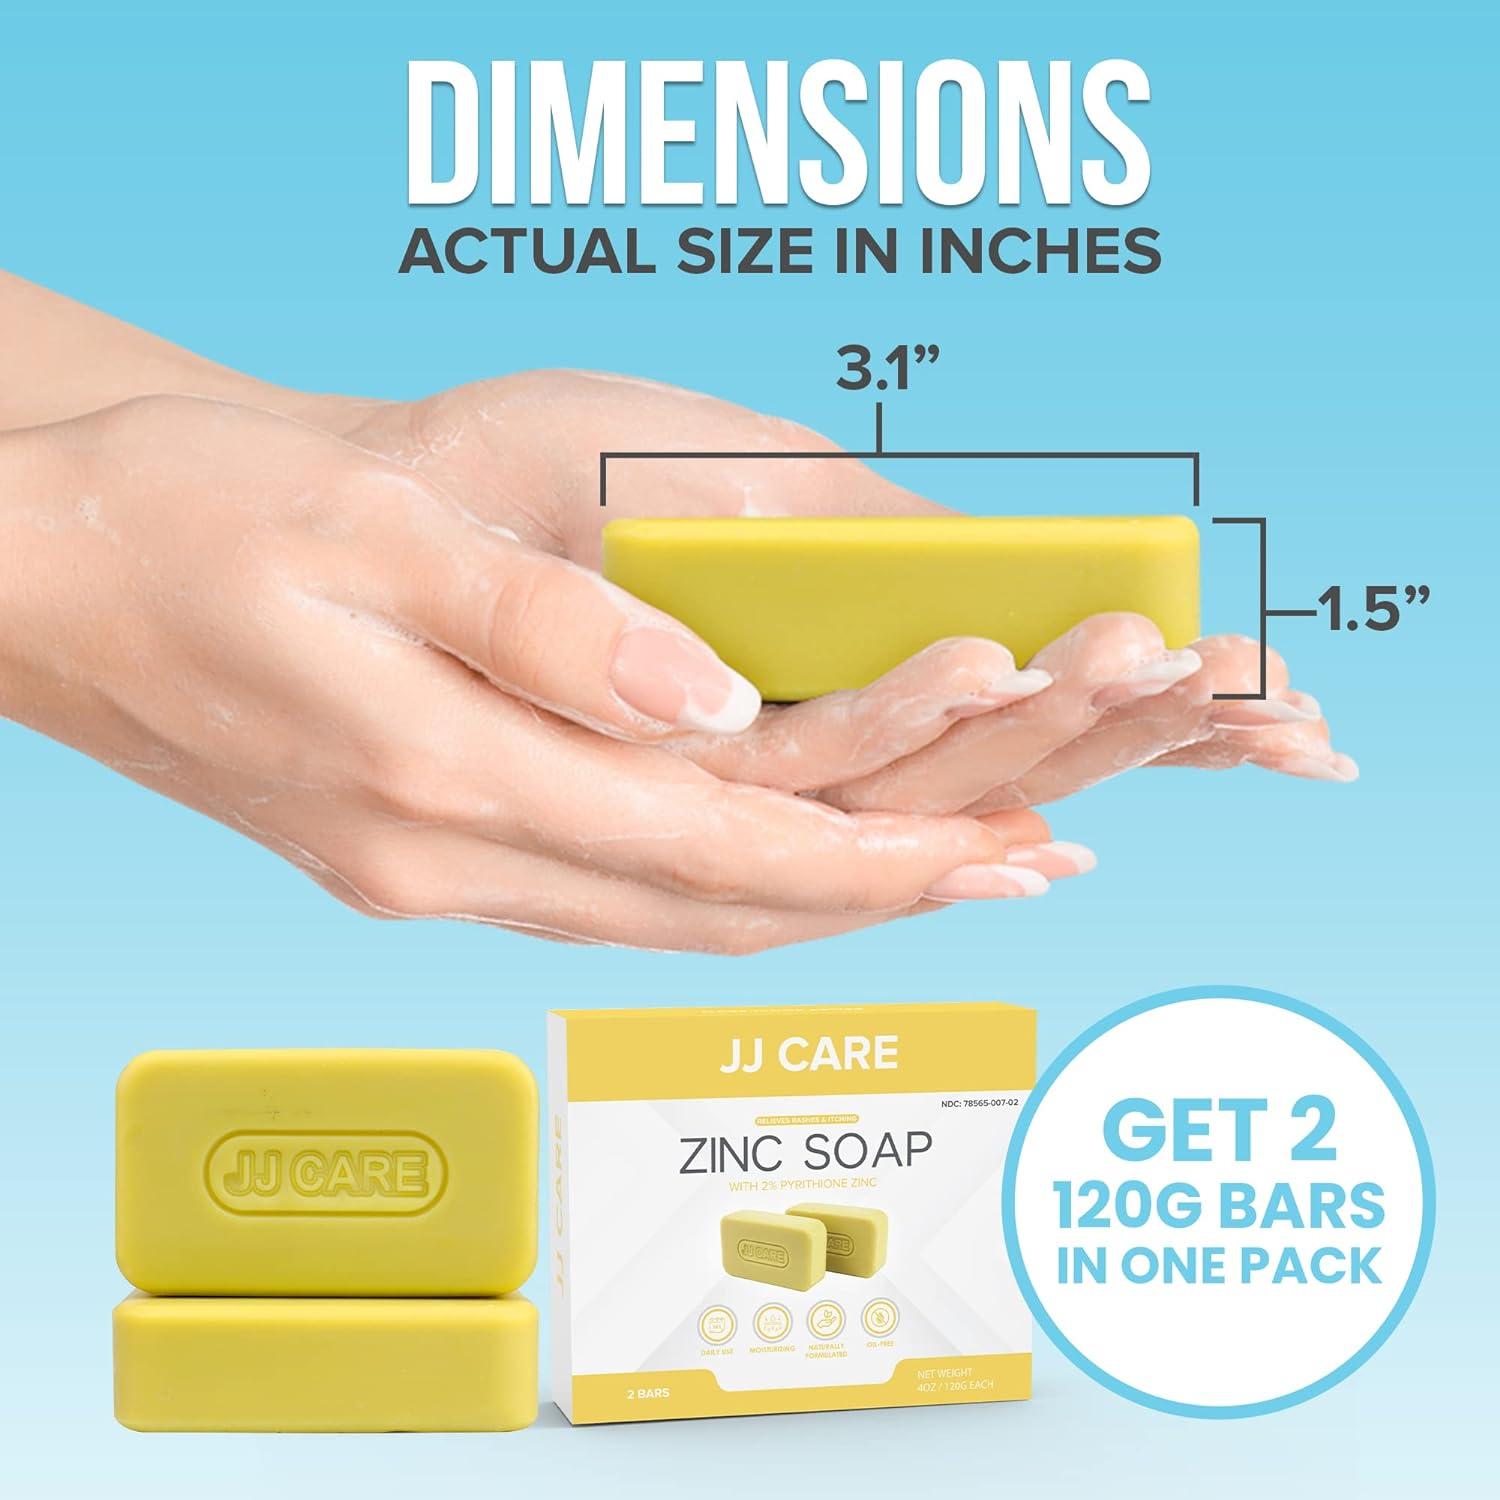 JJ CARE Zinc Soap - Daily Medicated 2% Zinc Pyrithione Soap - Zinc